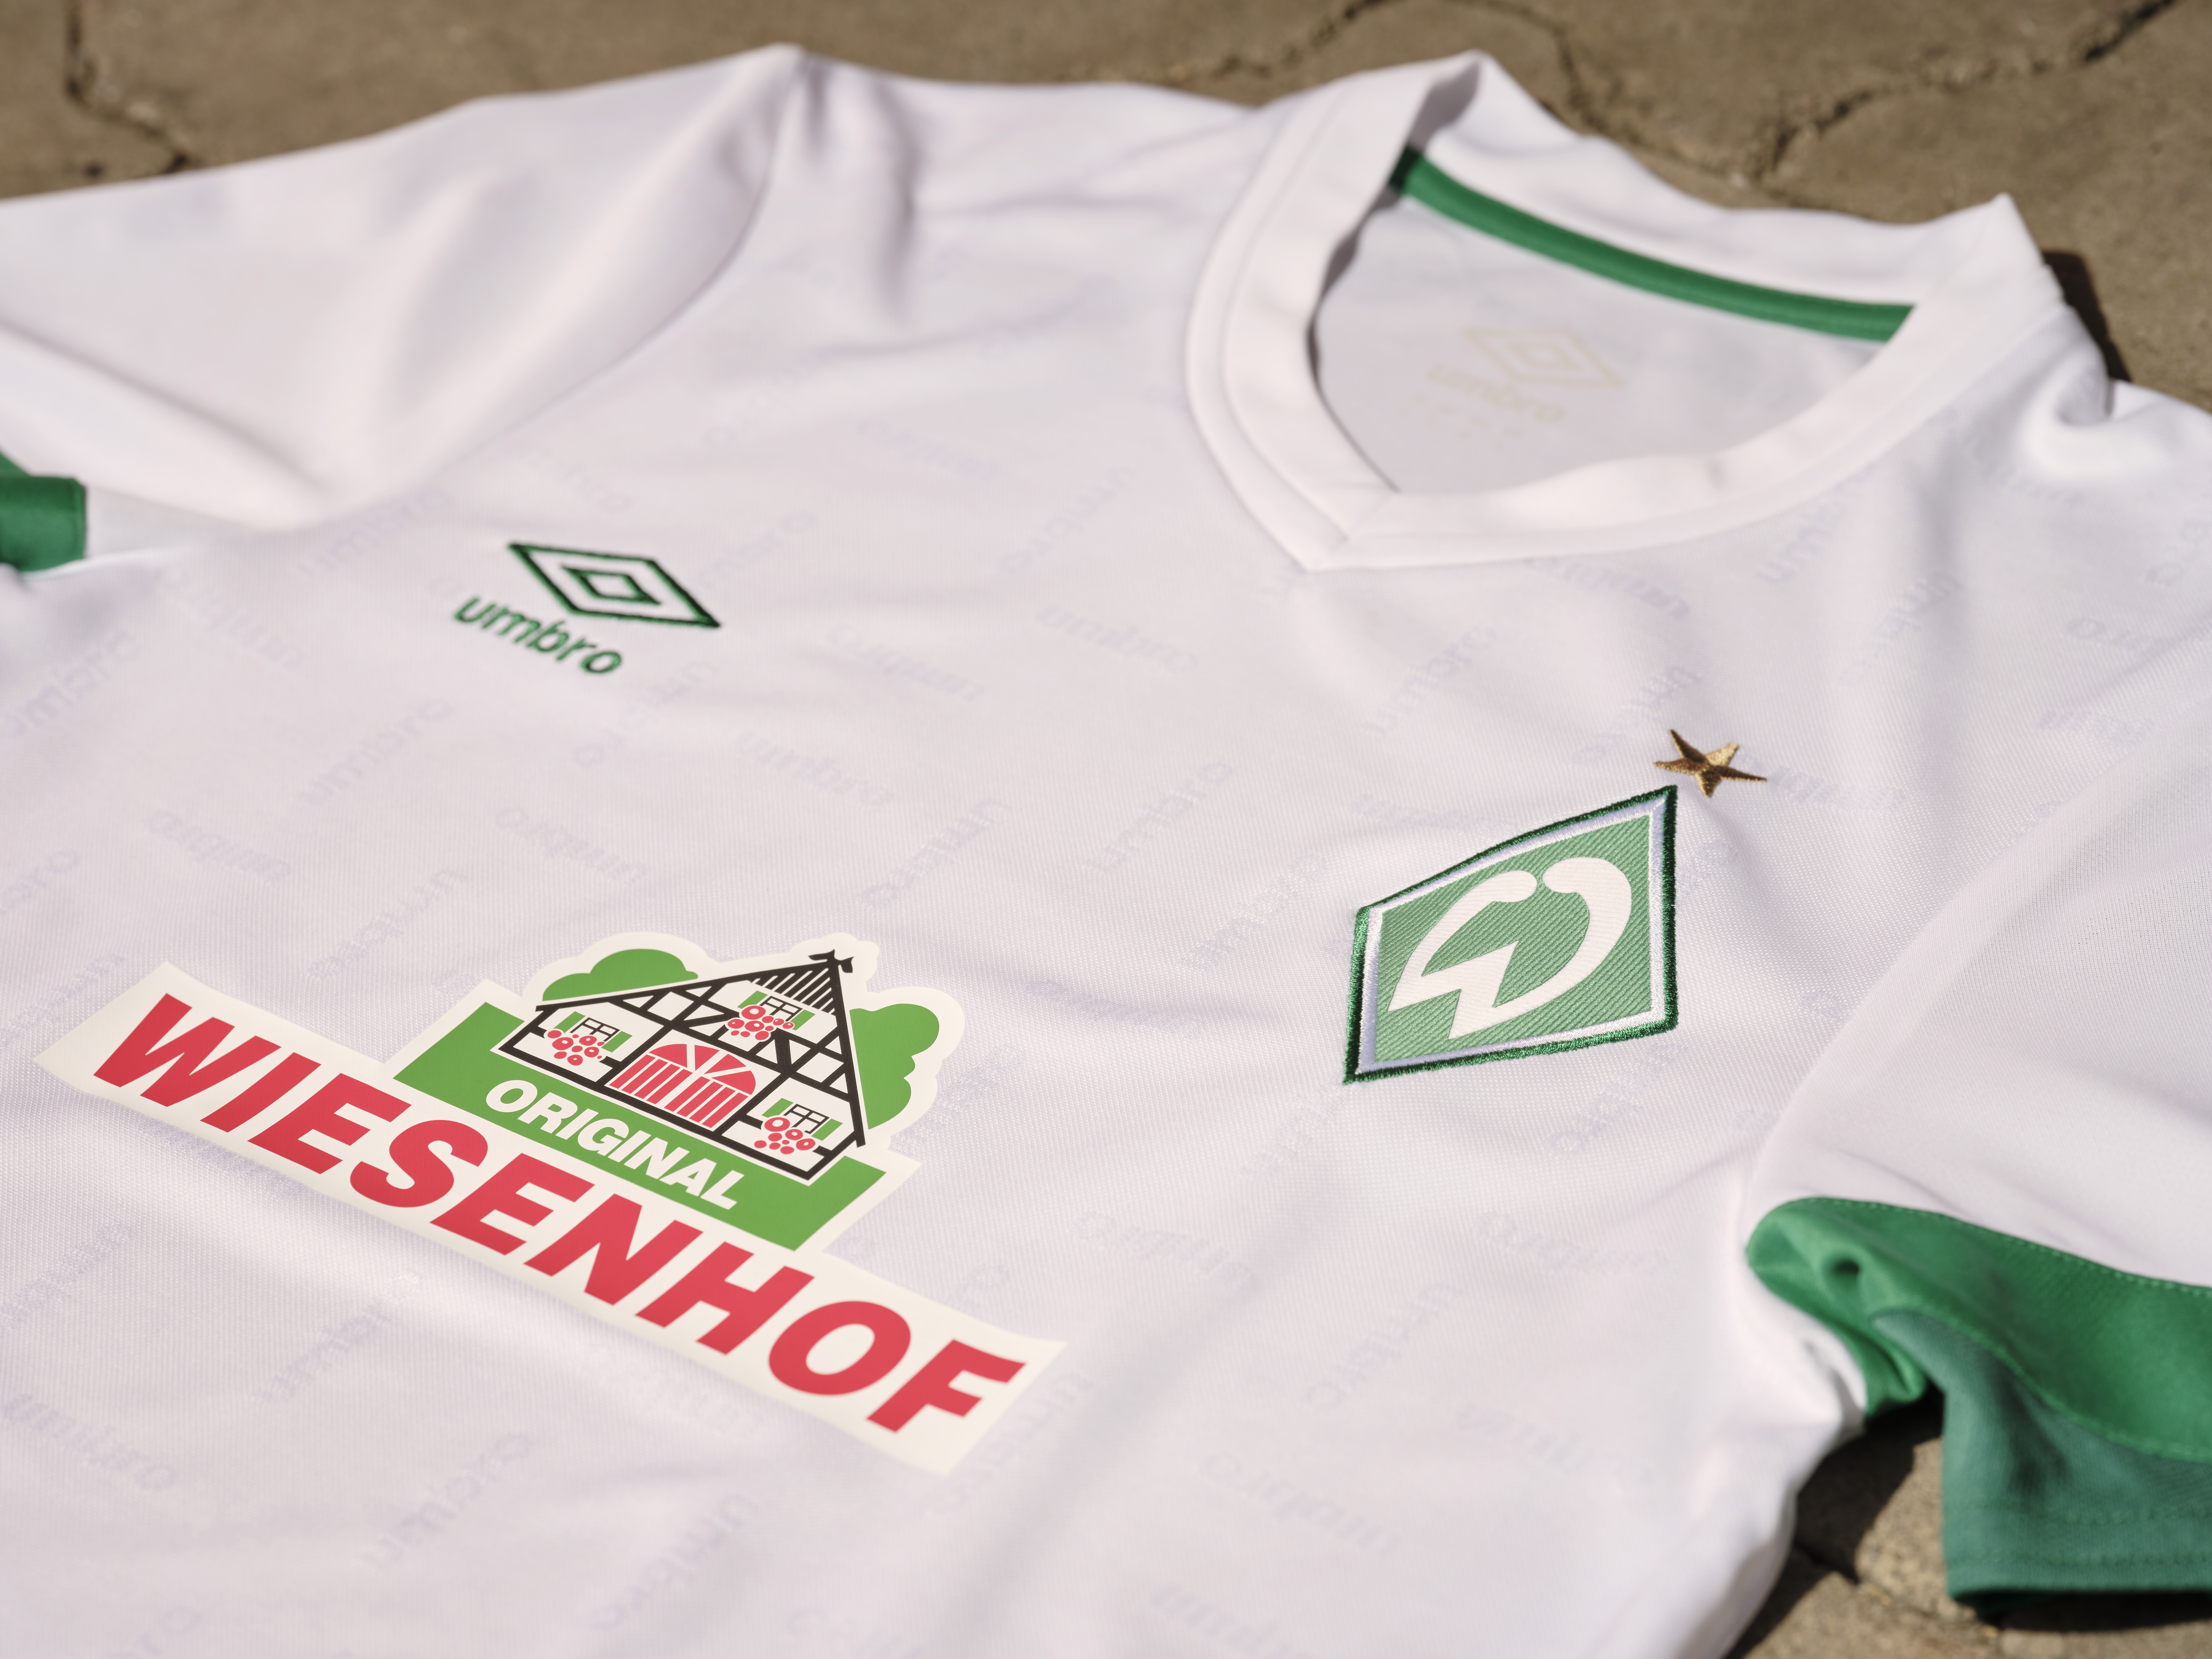 SV Werder Bremen 21/22 Away kit - Umbro